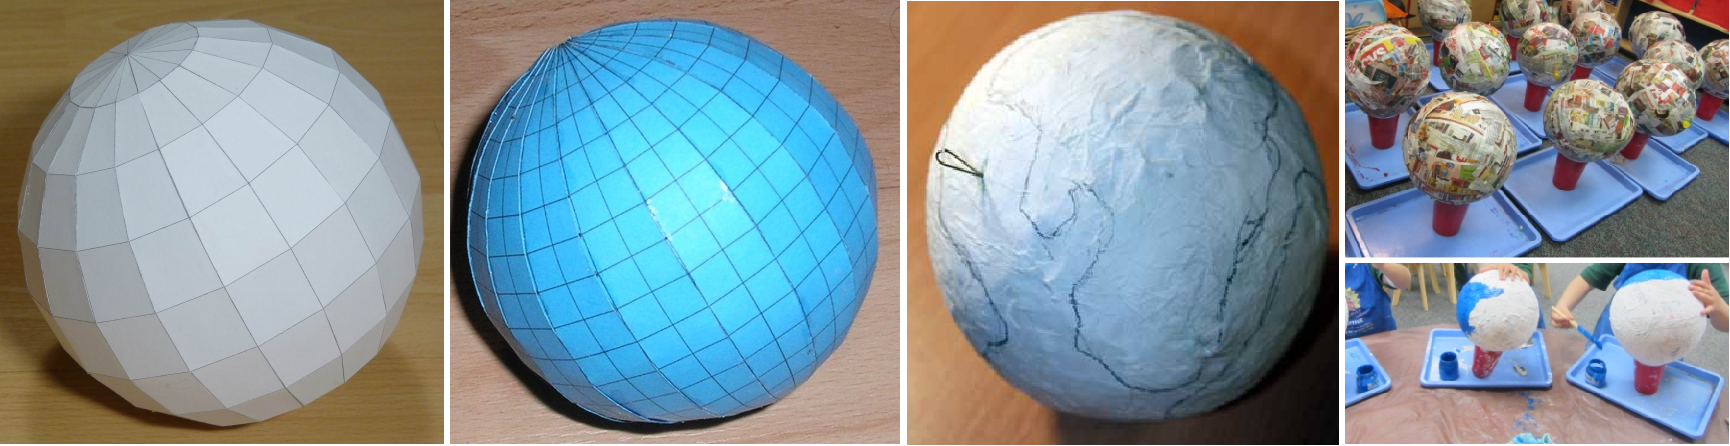 Поделка глобус на урок географии техникой папье-маше